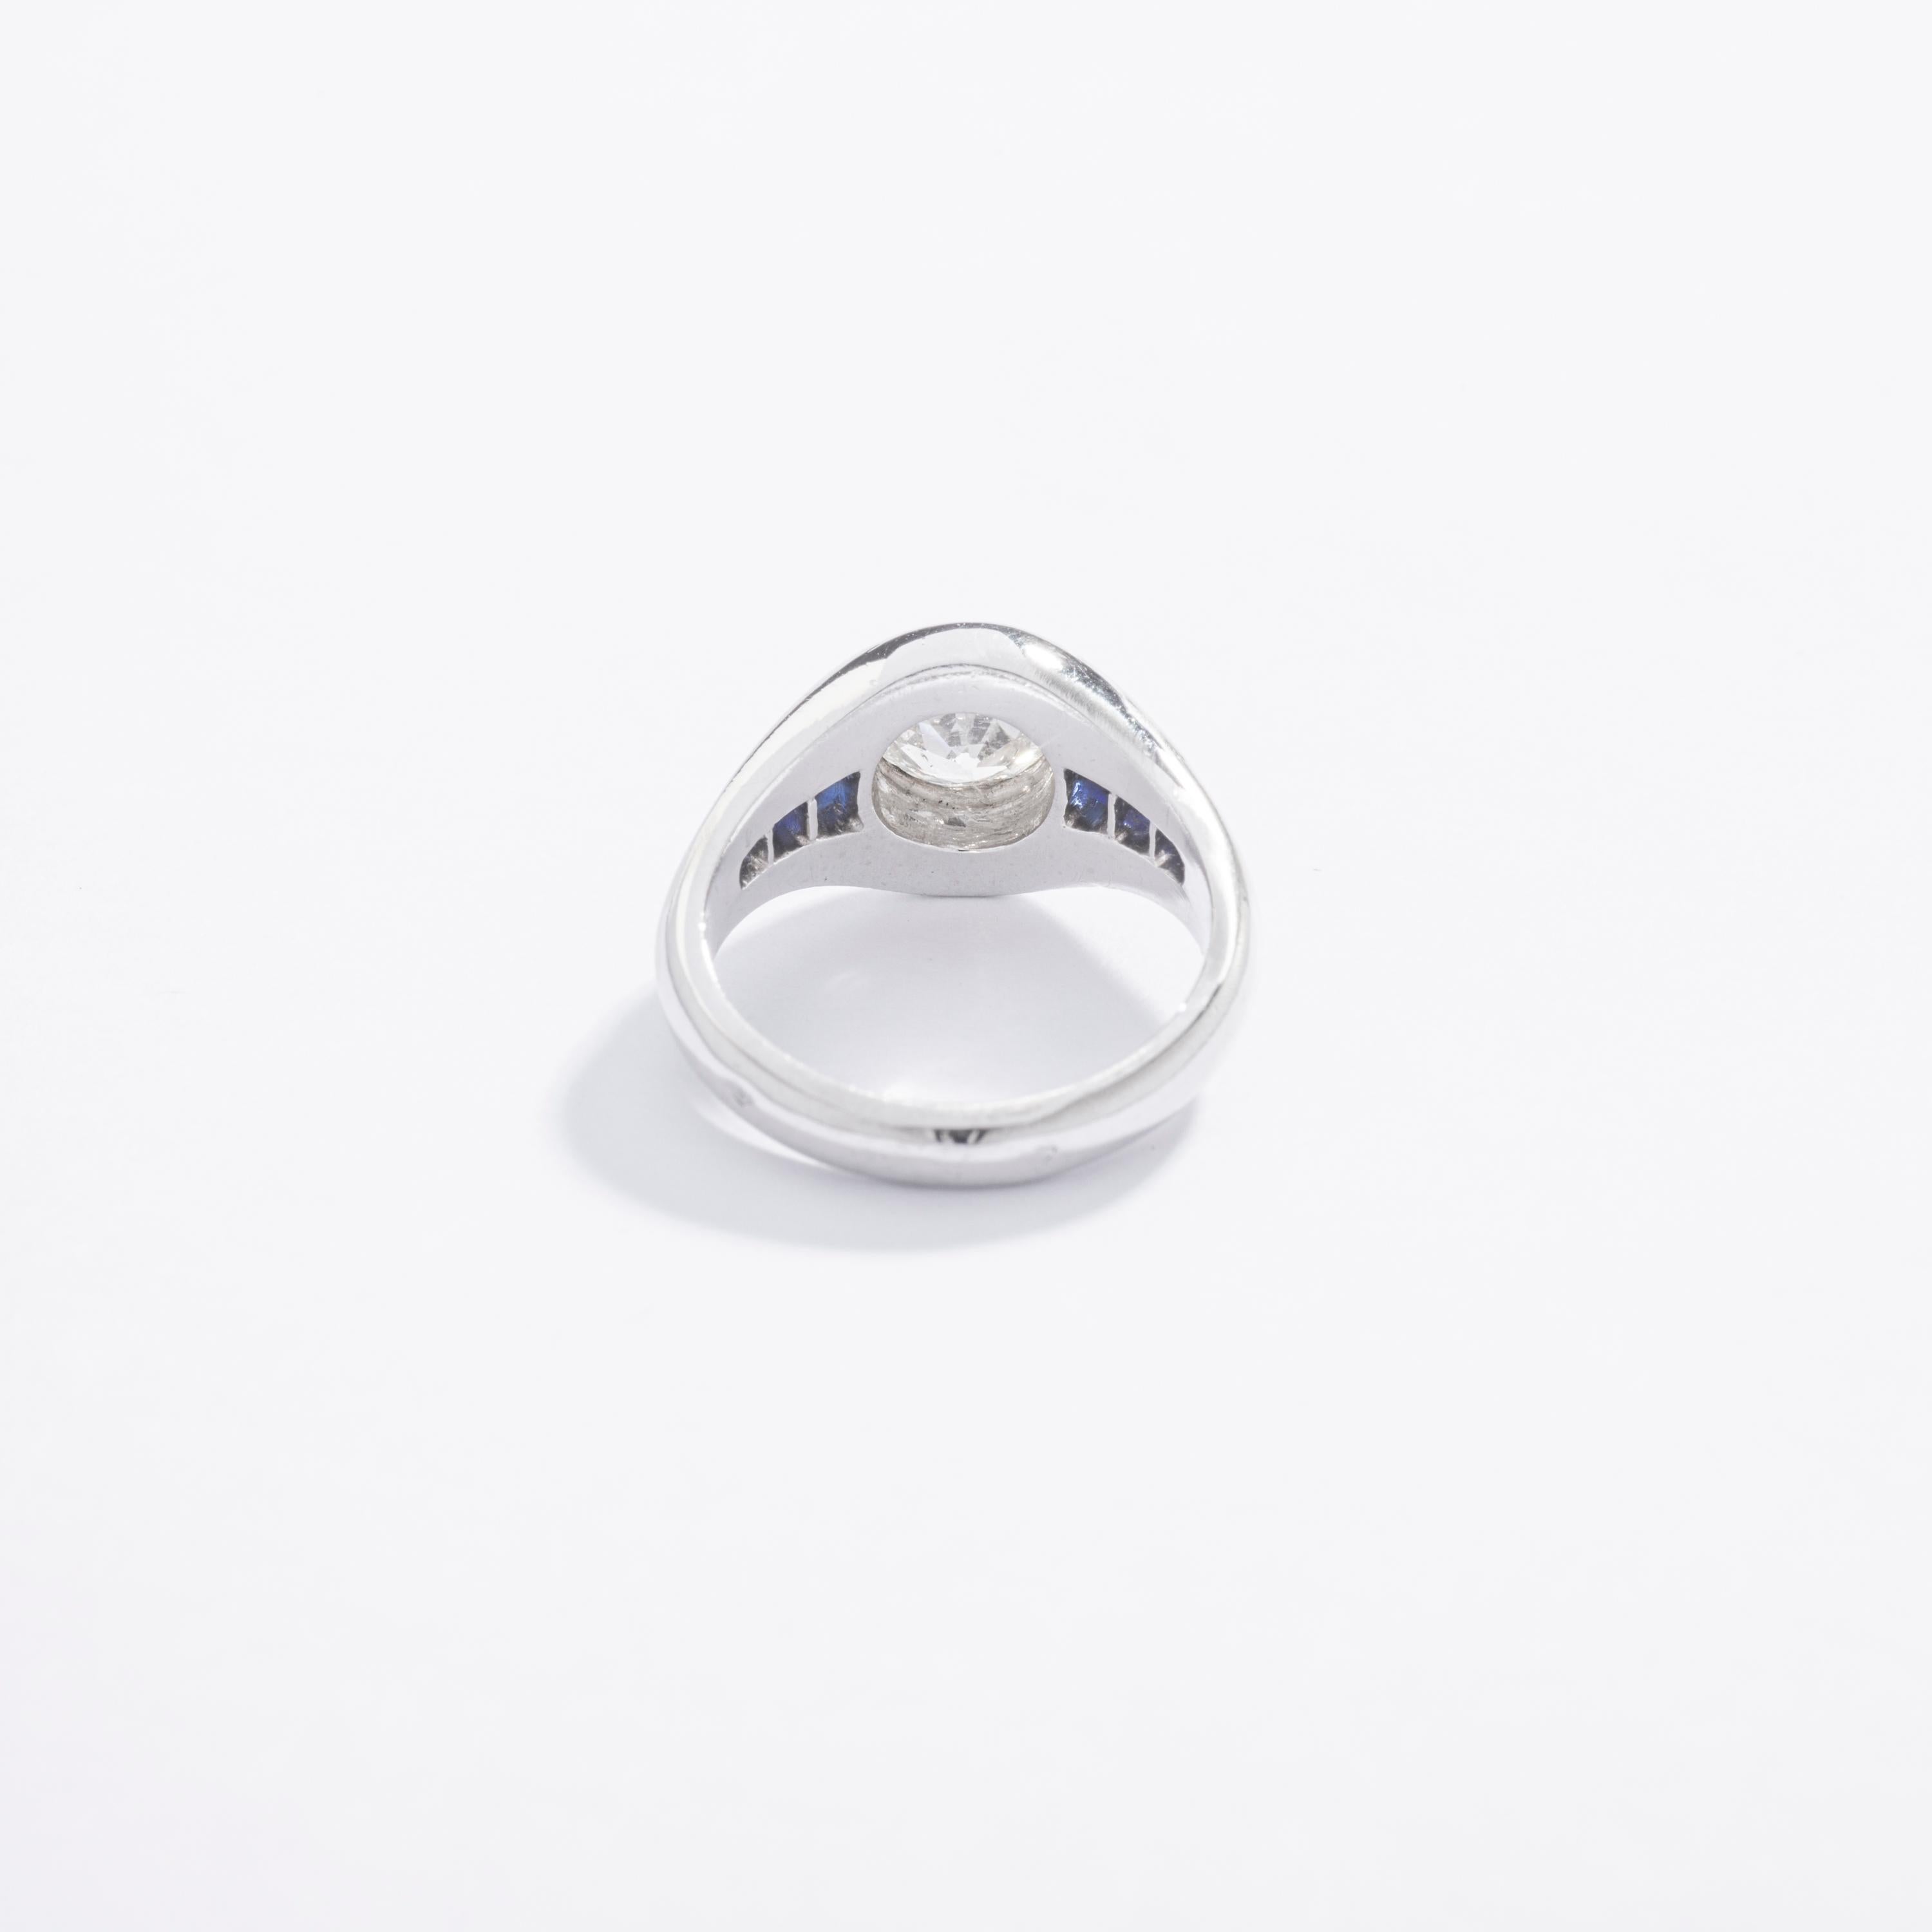 Cette petite bague chevalière est étonnante. Antique, 100 ans, mais un design si contemporain !
Centré par un Diamant taille ancienne de 0,46 carat sur platine avec Saphir calibré. La pièce est en parfait état.

Taille de l'anneau : 2 1/2.